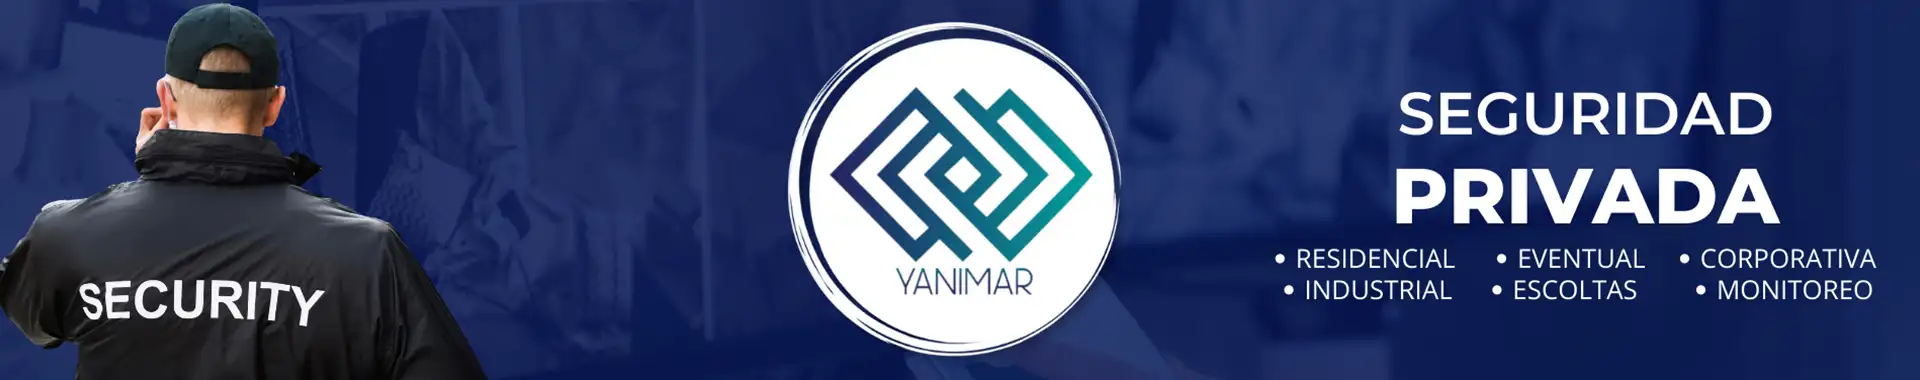 Imagen 6 del perfil de Seguridad Yanimar